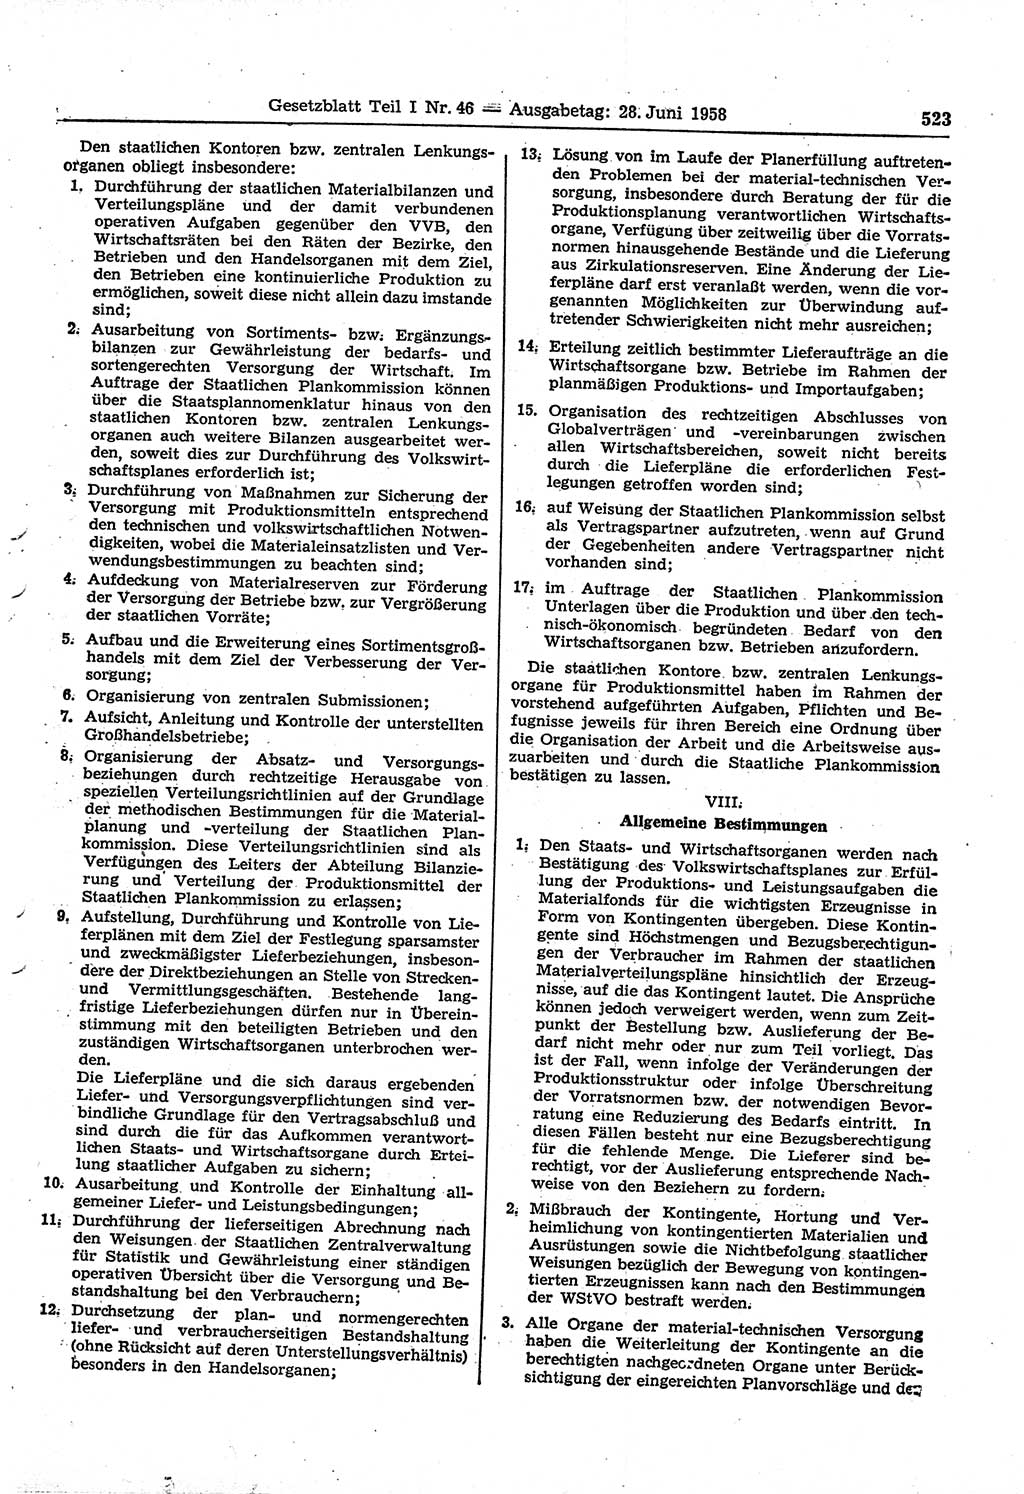 Gesetzblatt (GBl.) der Deutschen Demokratischen Republik (DDR) Teil Ⅰ 1958, Seite 523 (GBl. DDR Ⅰ 1958, S. 523)